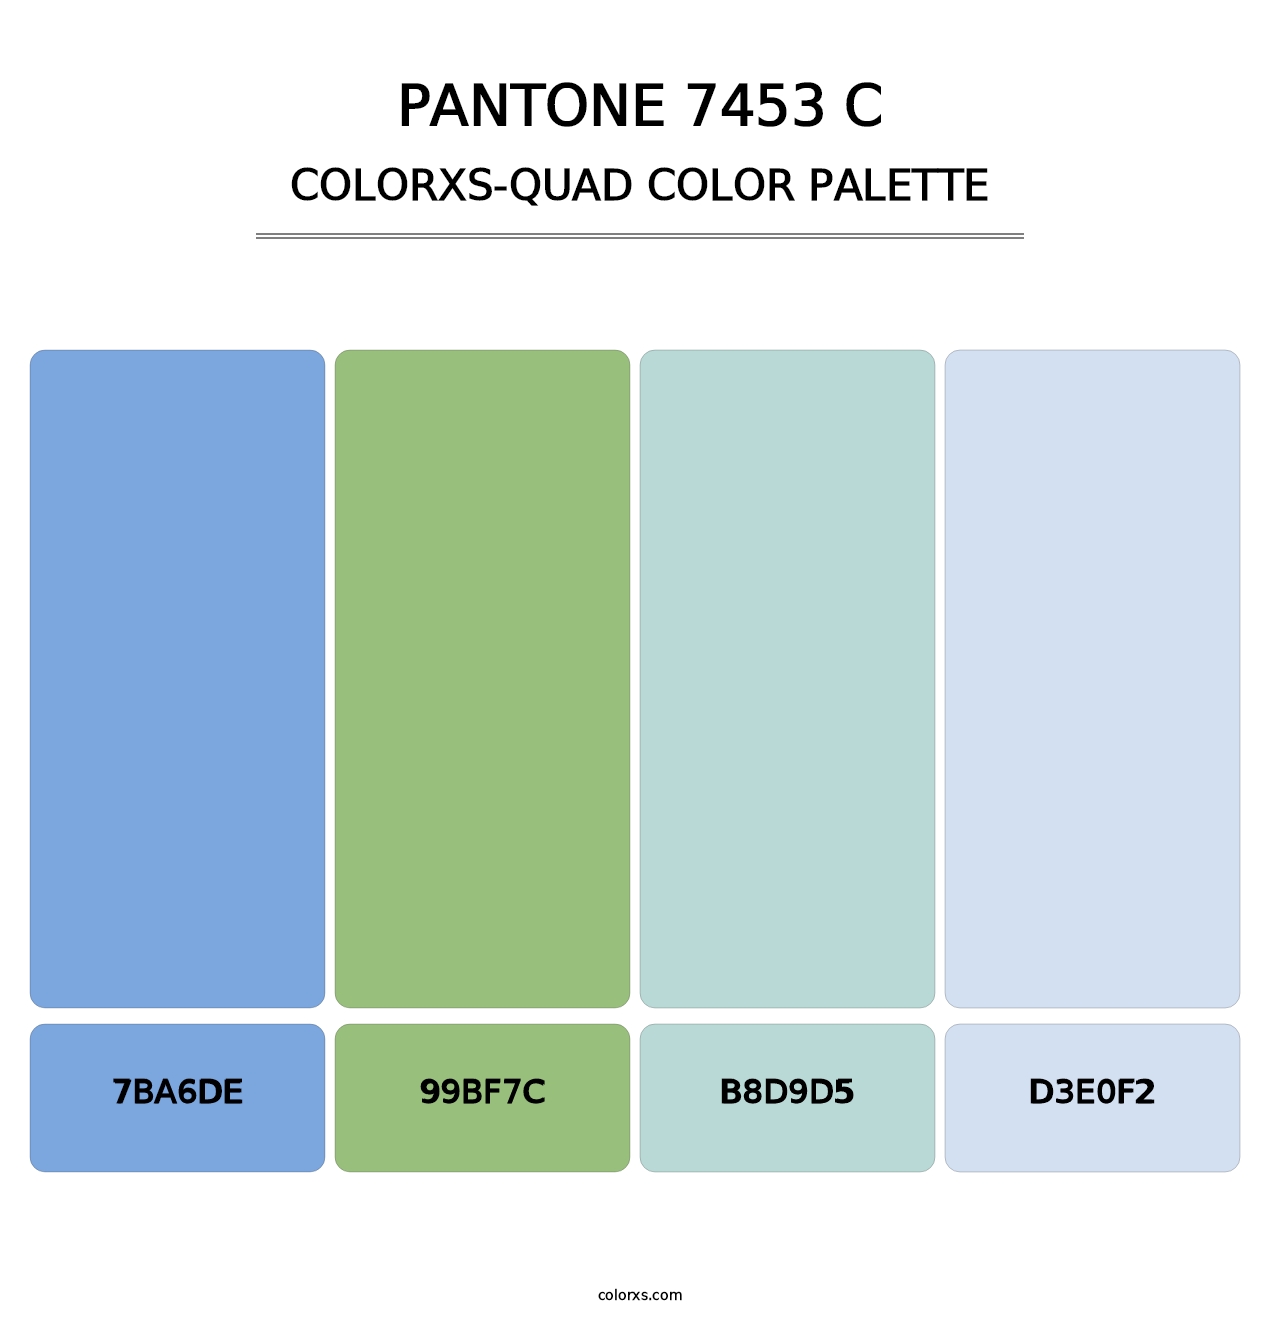 PANTONE 7453 C - Colorxs Quad Palette